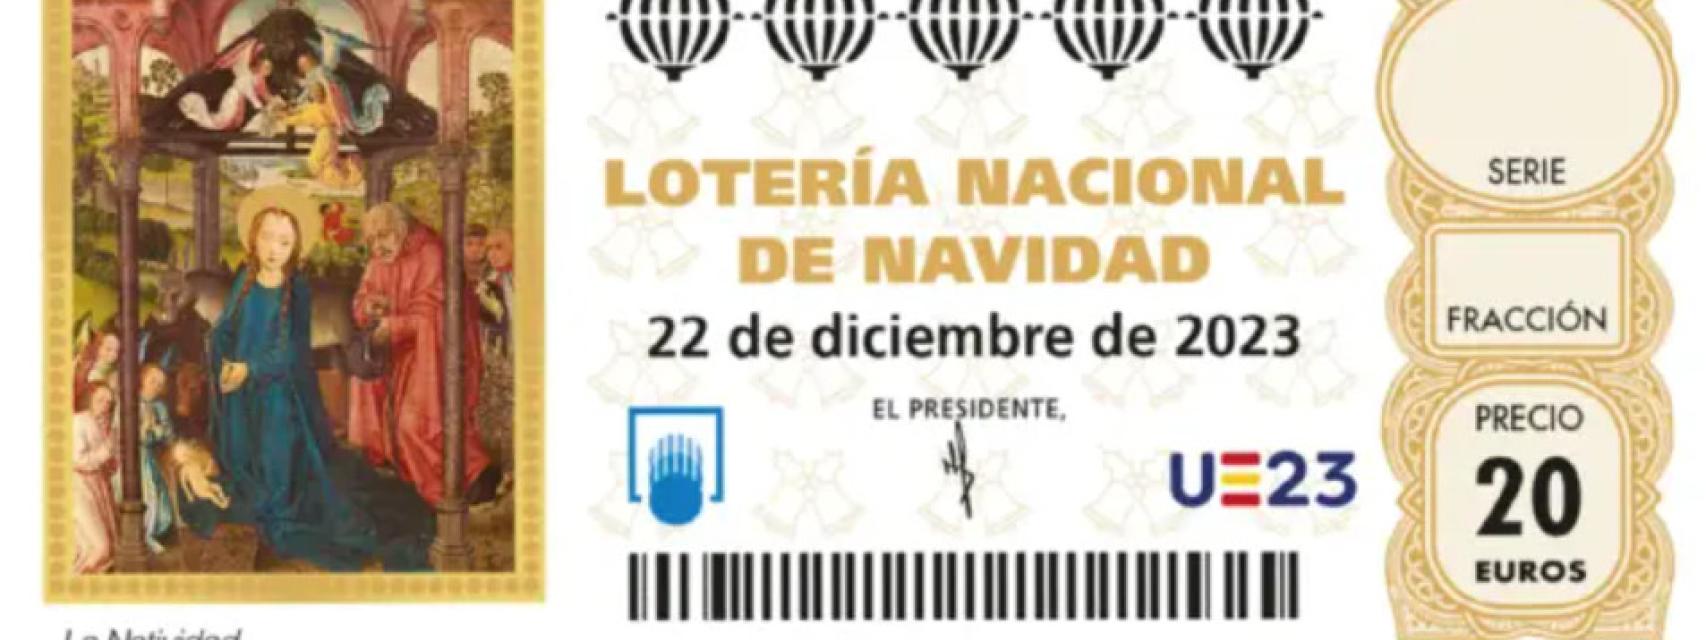 Loterías de alto nivel en español